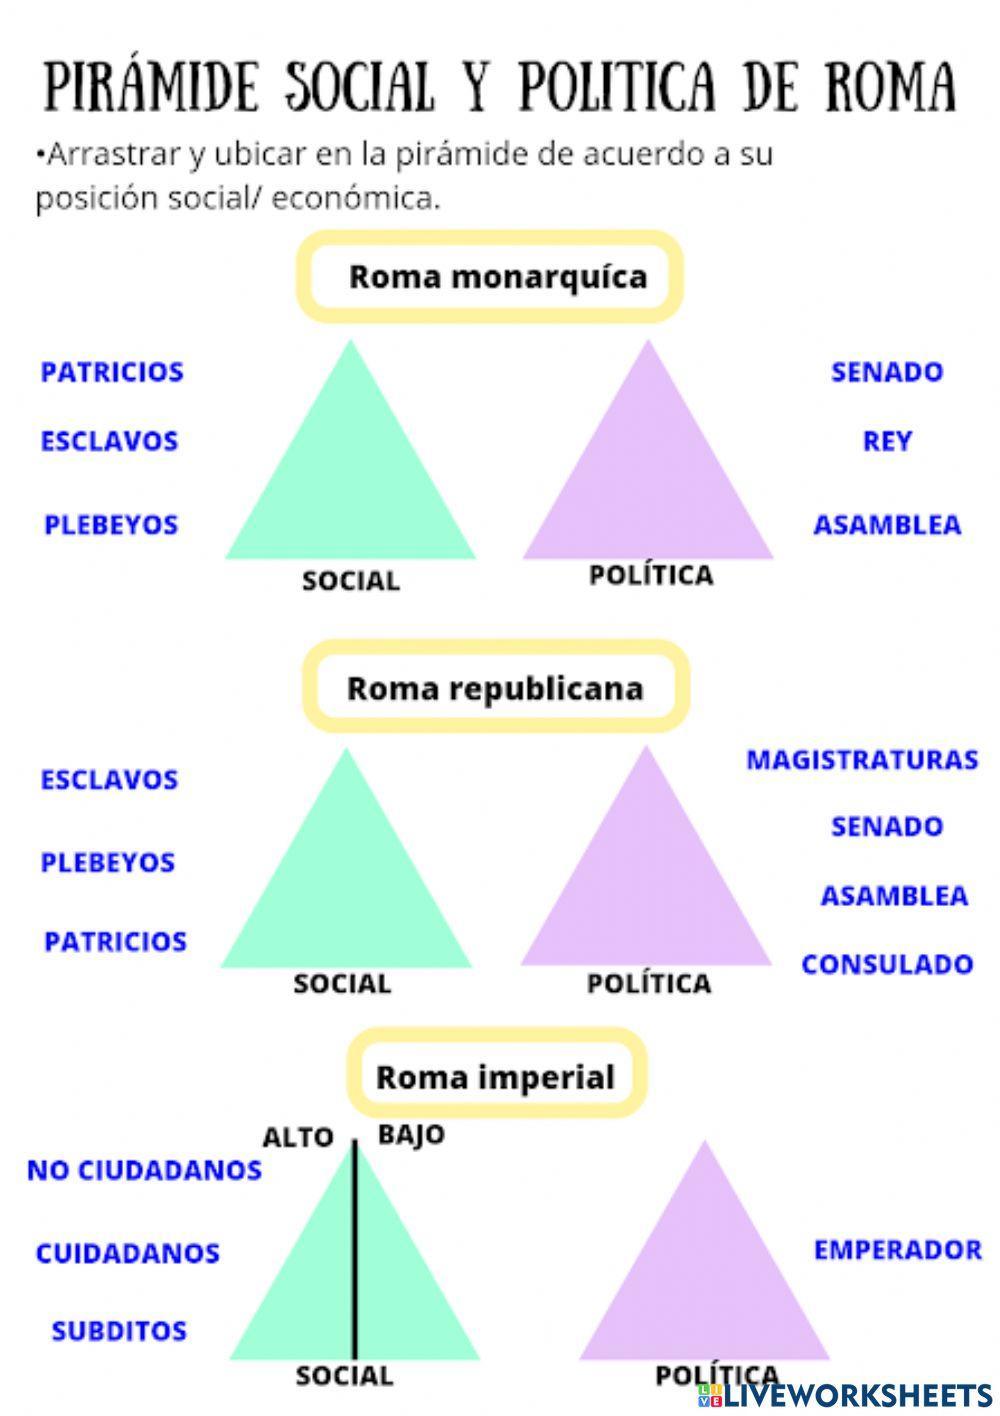 Piramide social y politica de roma